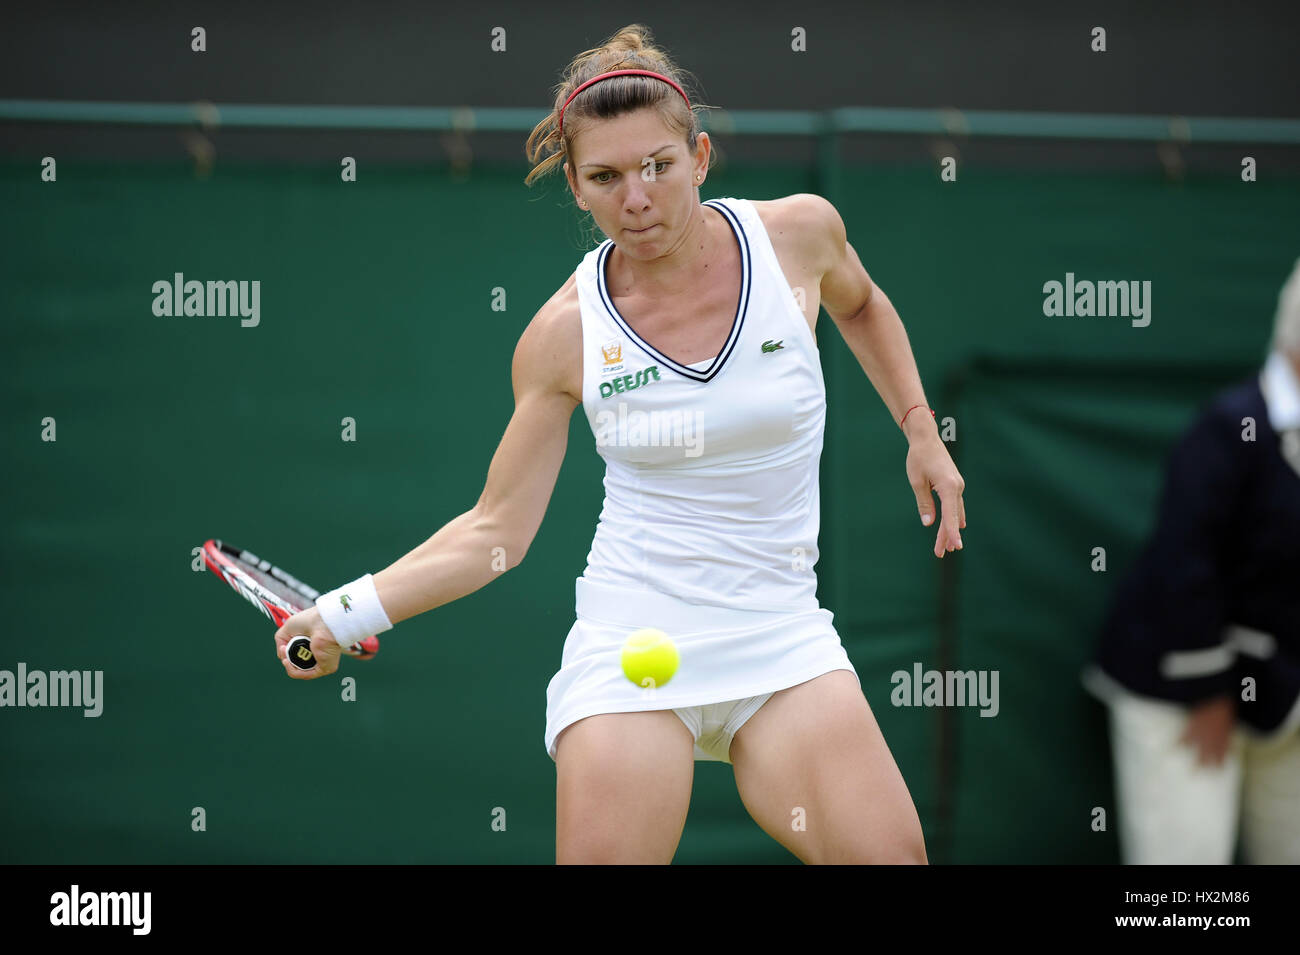 Rumänien tennis -Fotos und -Bildmaterial in hoher Auflösung – Alamy